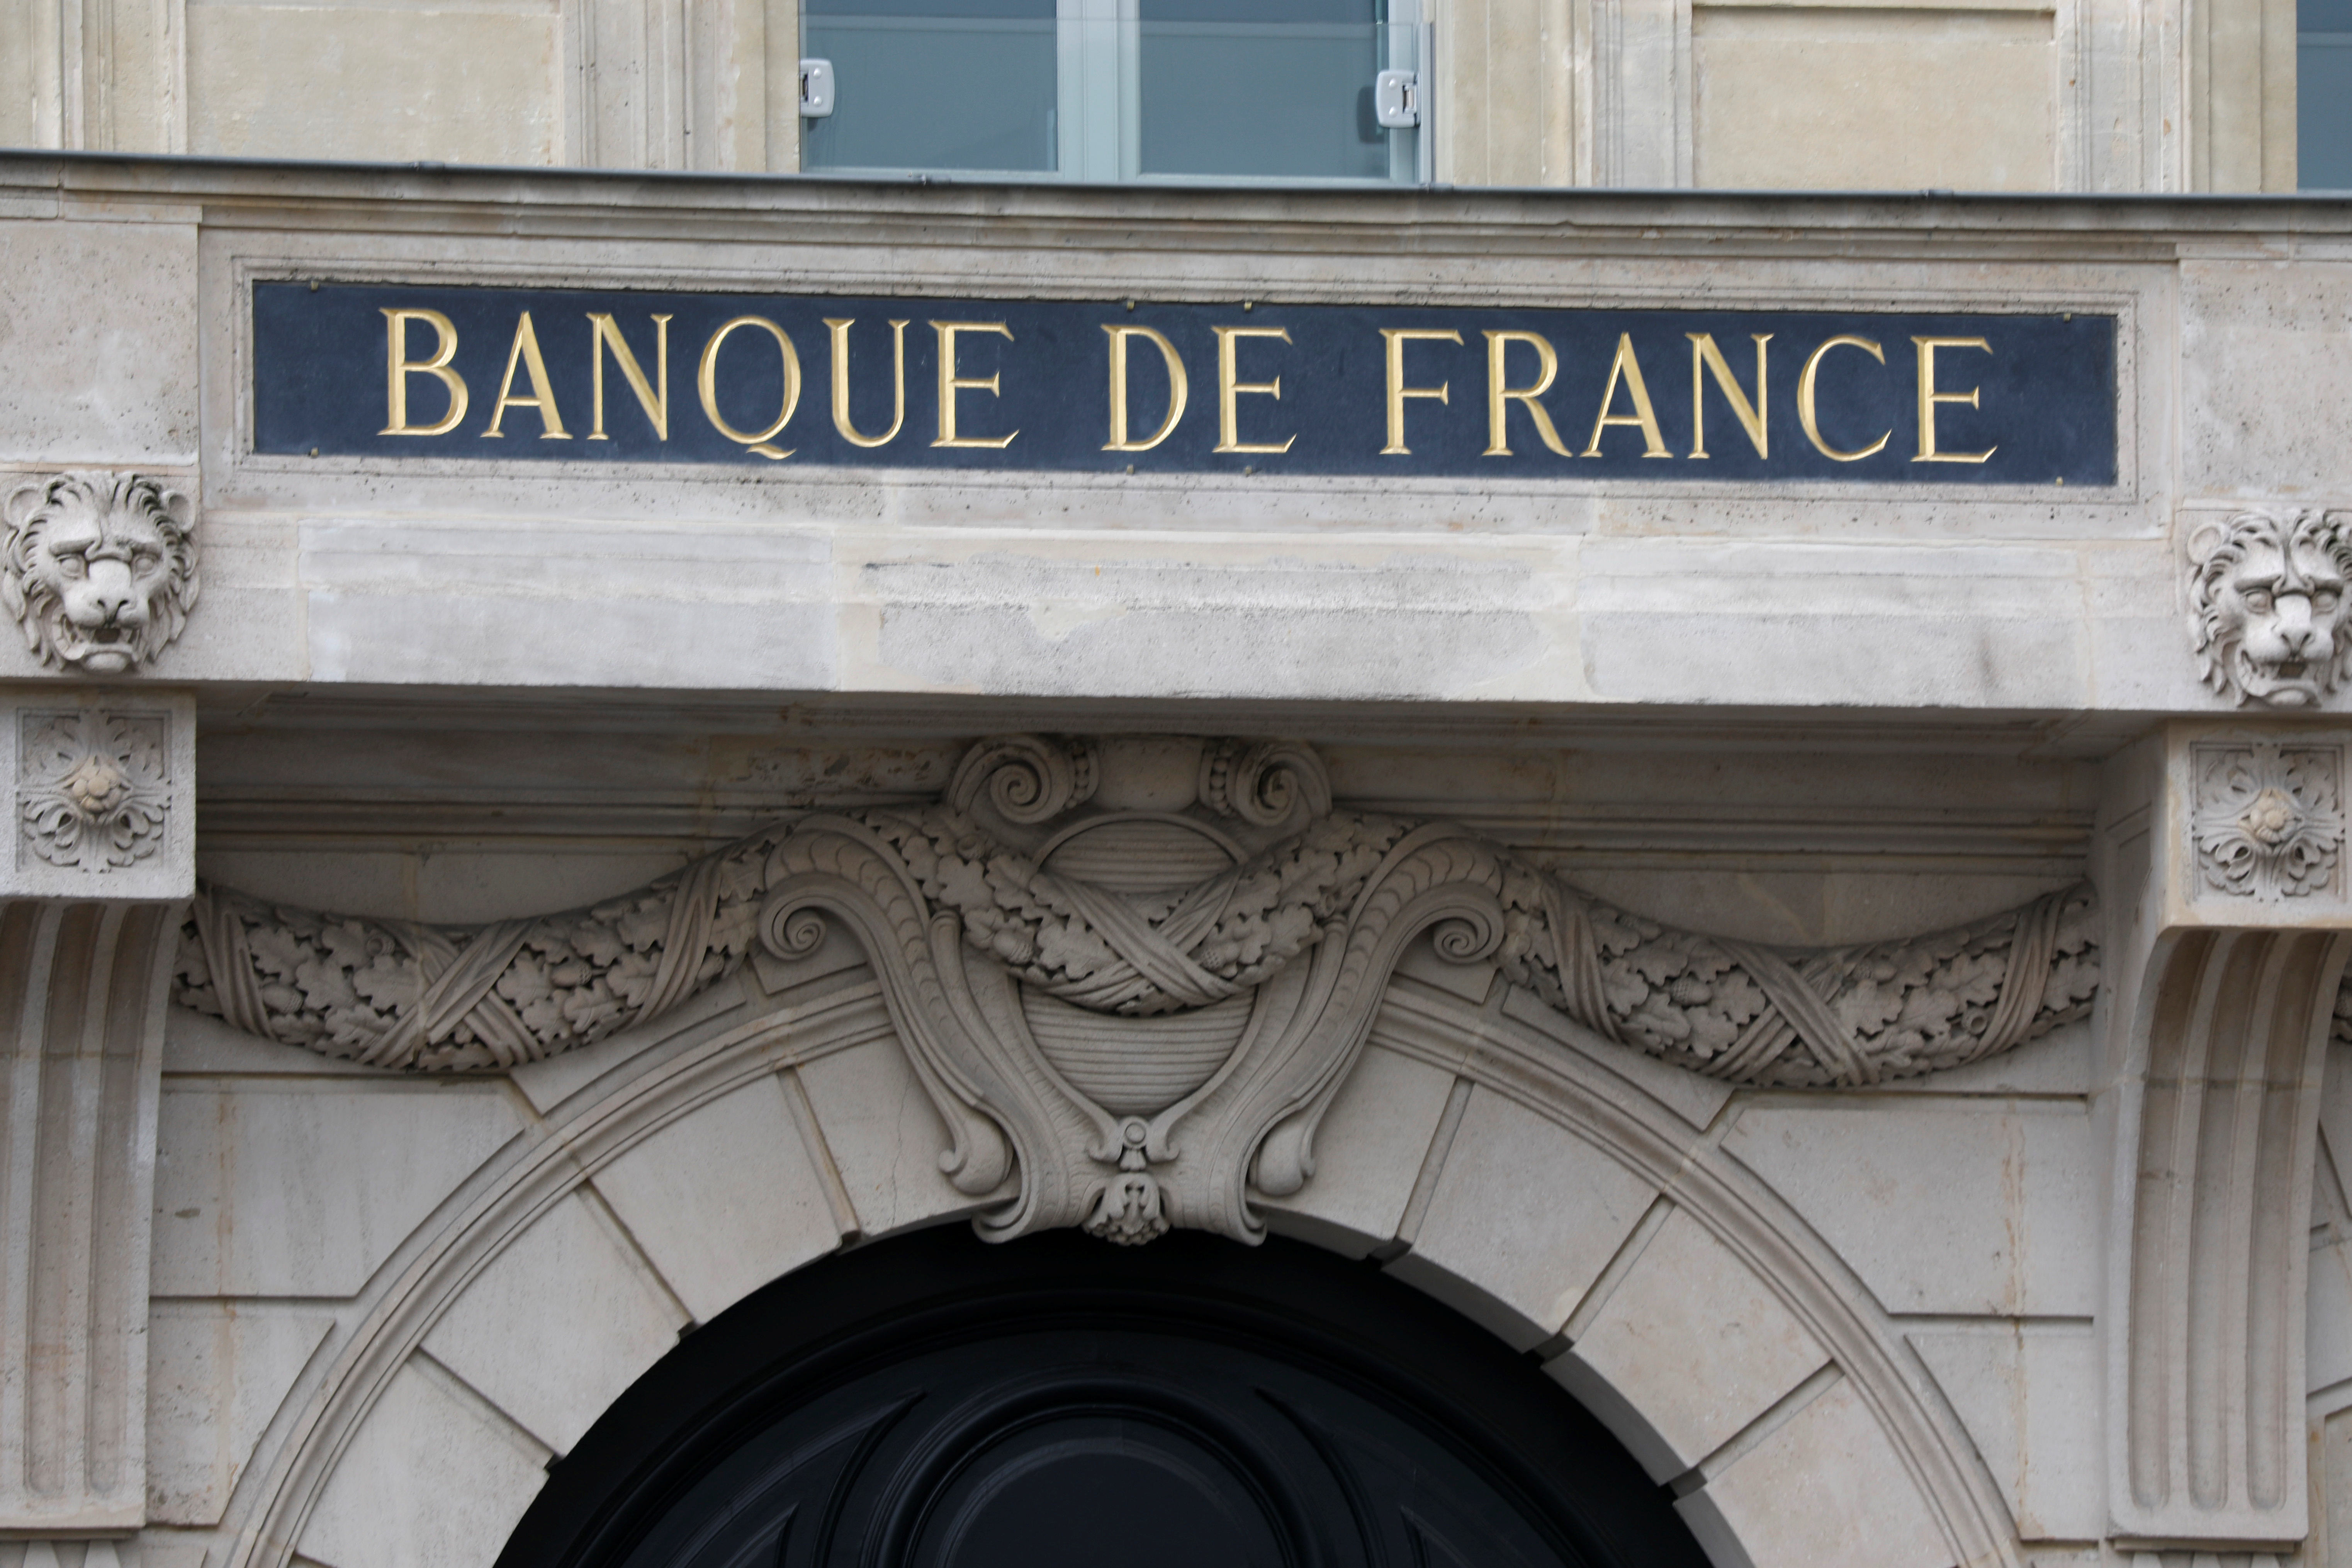 Malgré la reprise, l'économie française subit encore des pertes colossales